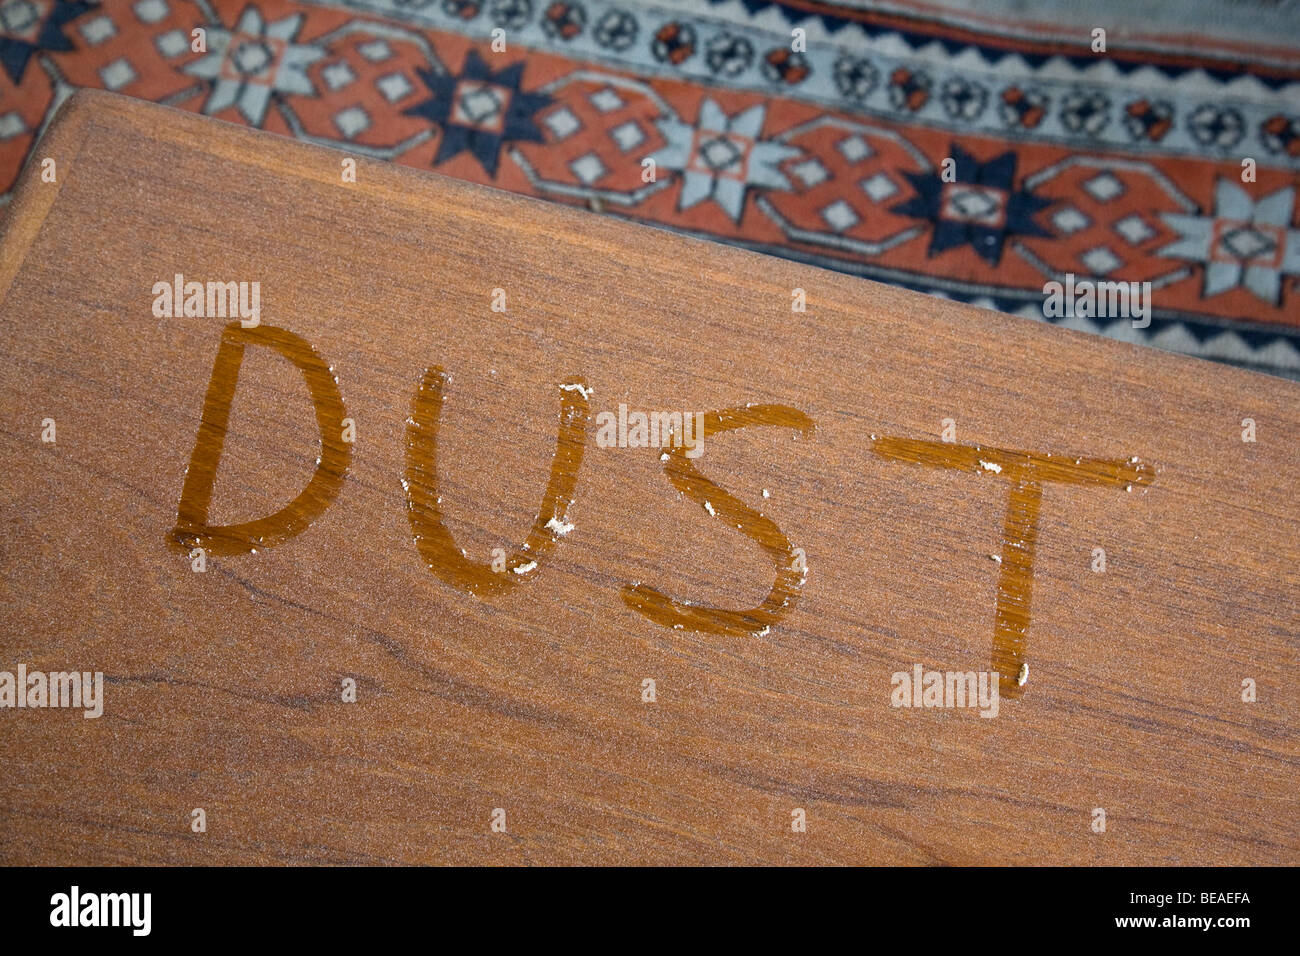 Das Wort Staub auf einem staubigen Tisch geschrieben Stockfoto